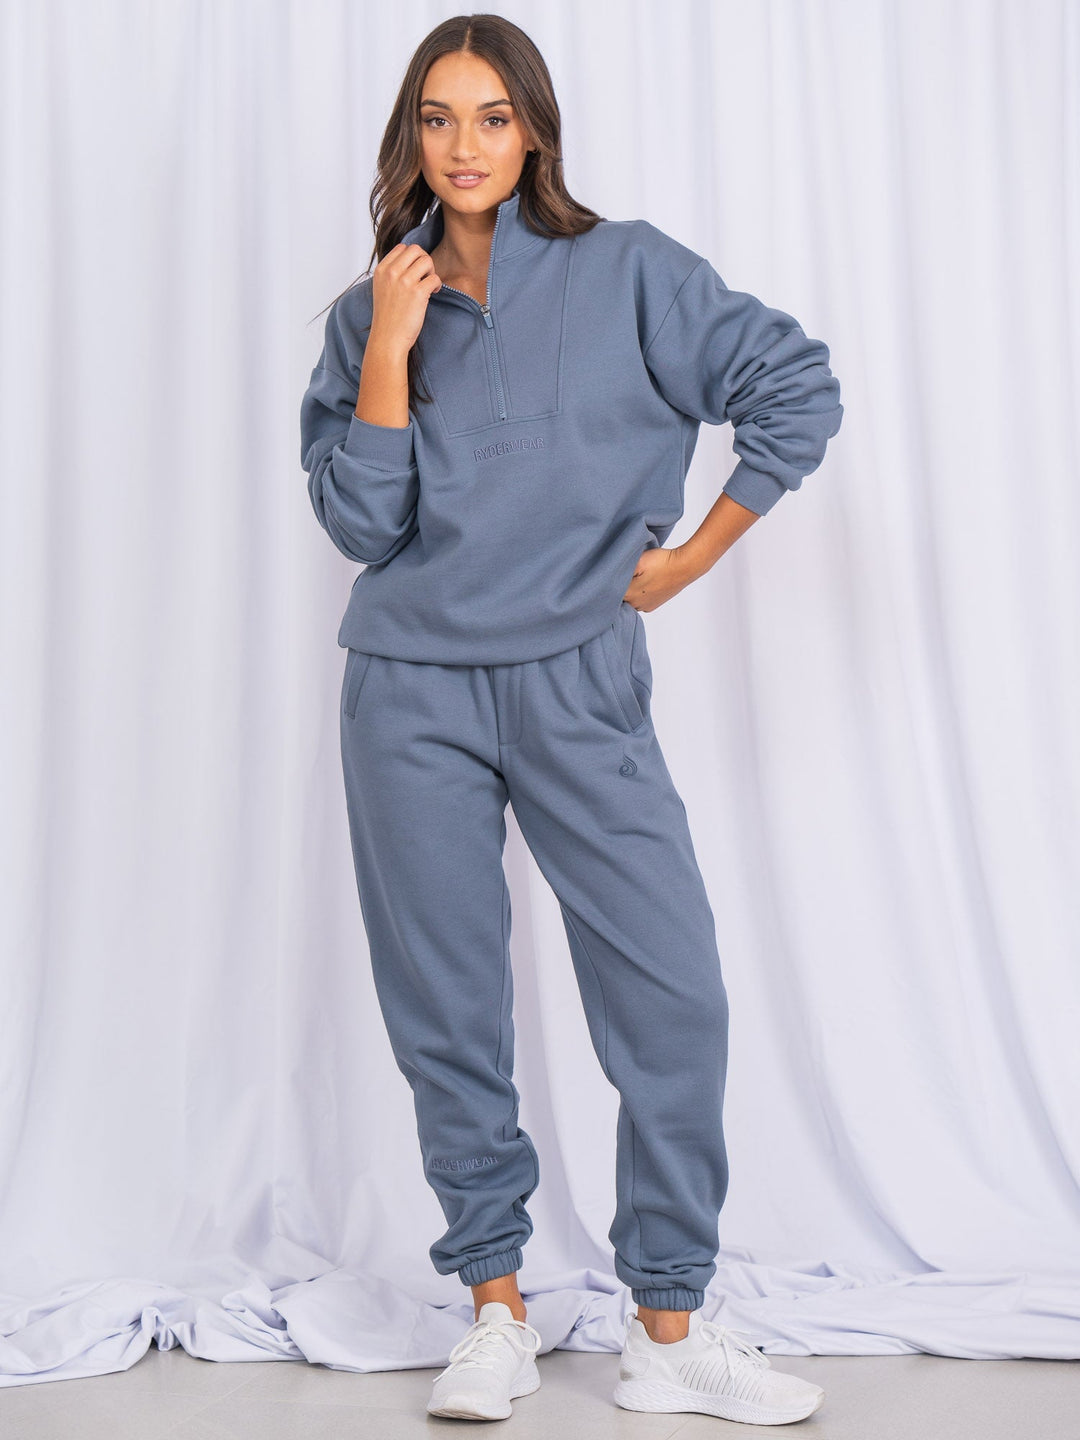 Unisex Half Zip Jumper - Denim Blue Clothing Ryderwear 